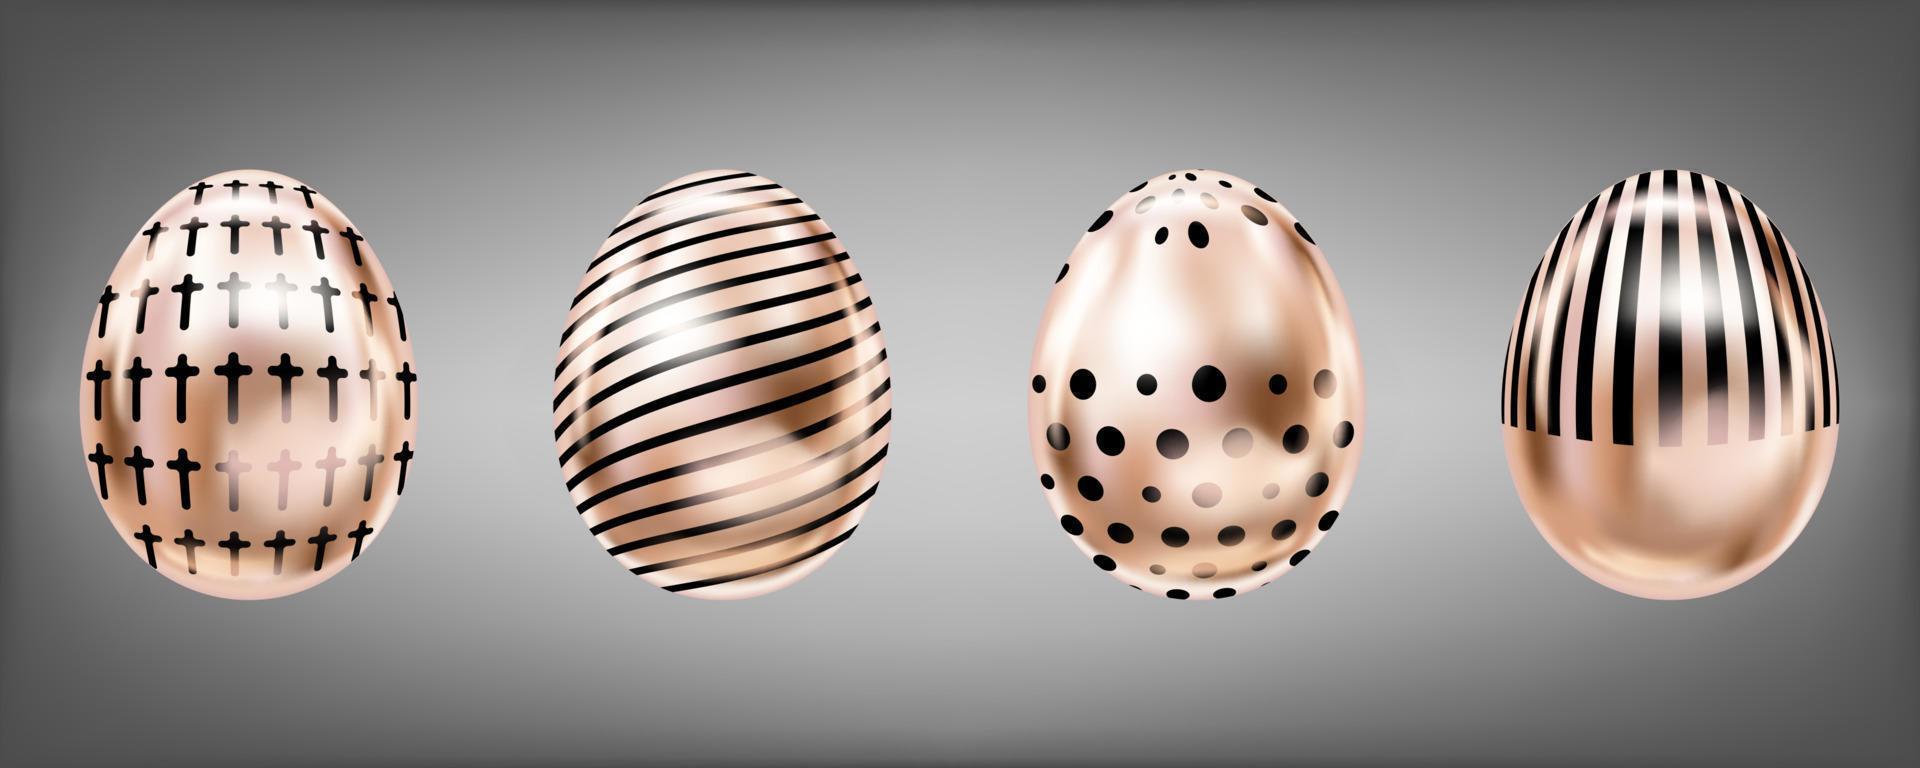 Vier glänzende metallische Eier in rosa Farbe mit schwarzem Kreuz, Punkten und Streifen. isolierte objekte für die osterdekoration vektor